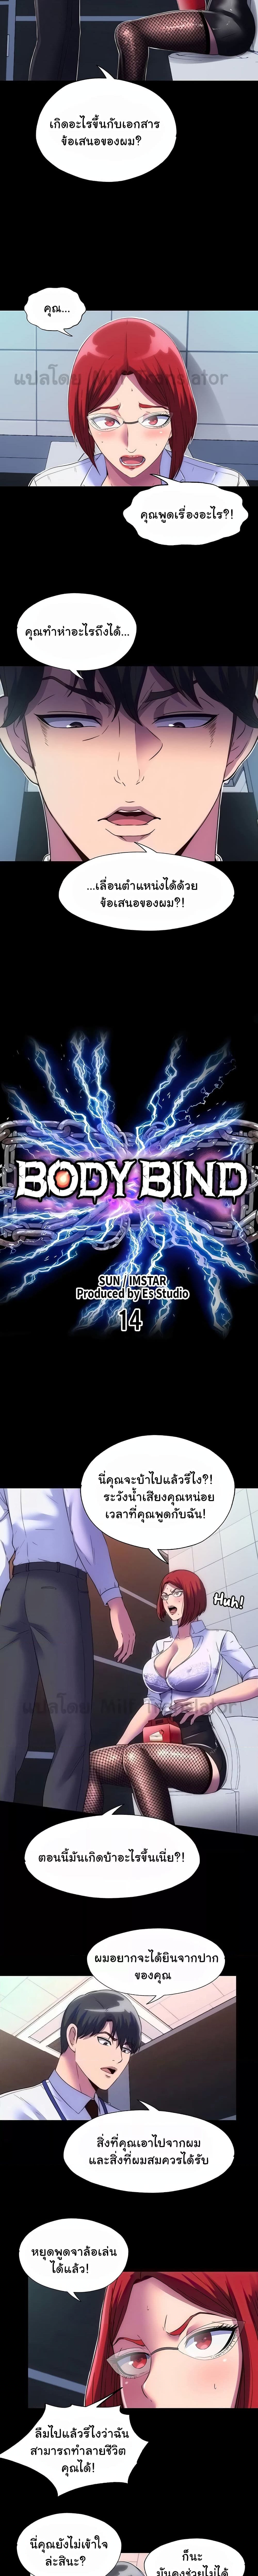 Body Bind ตอนที่ 14 ภาพ 2